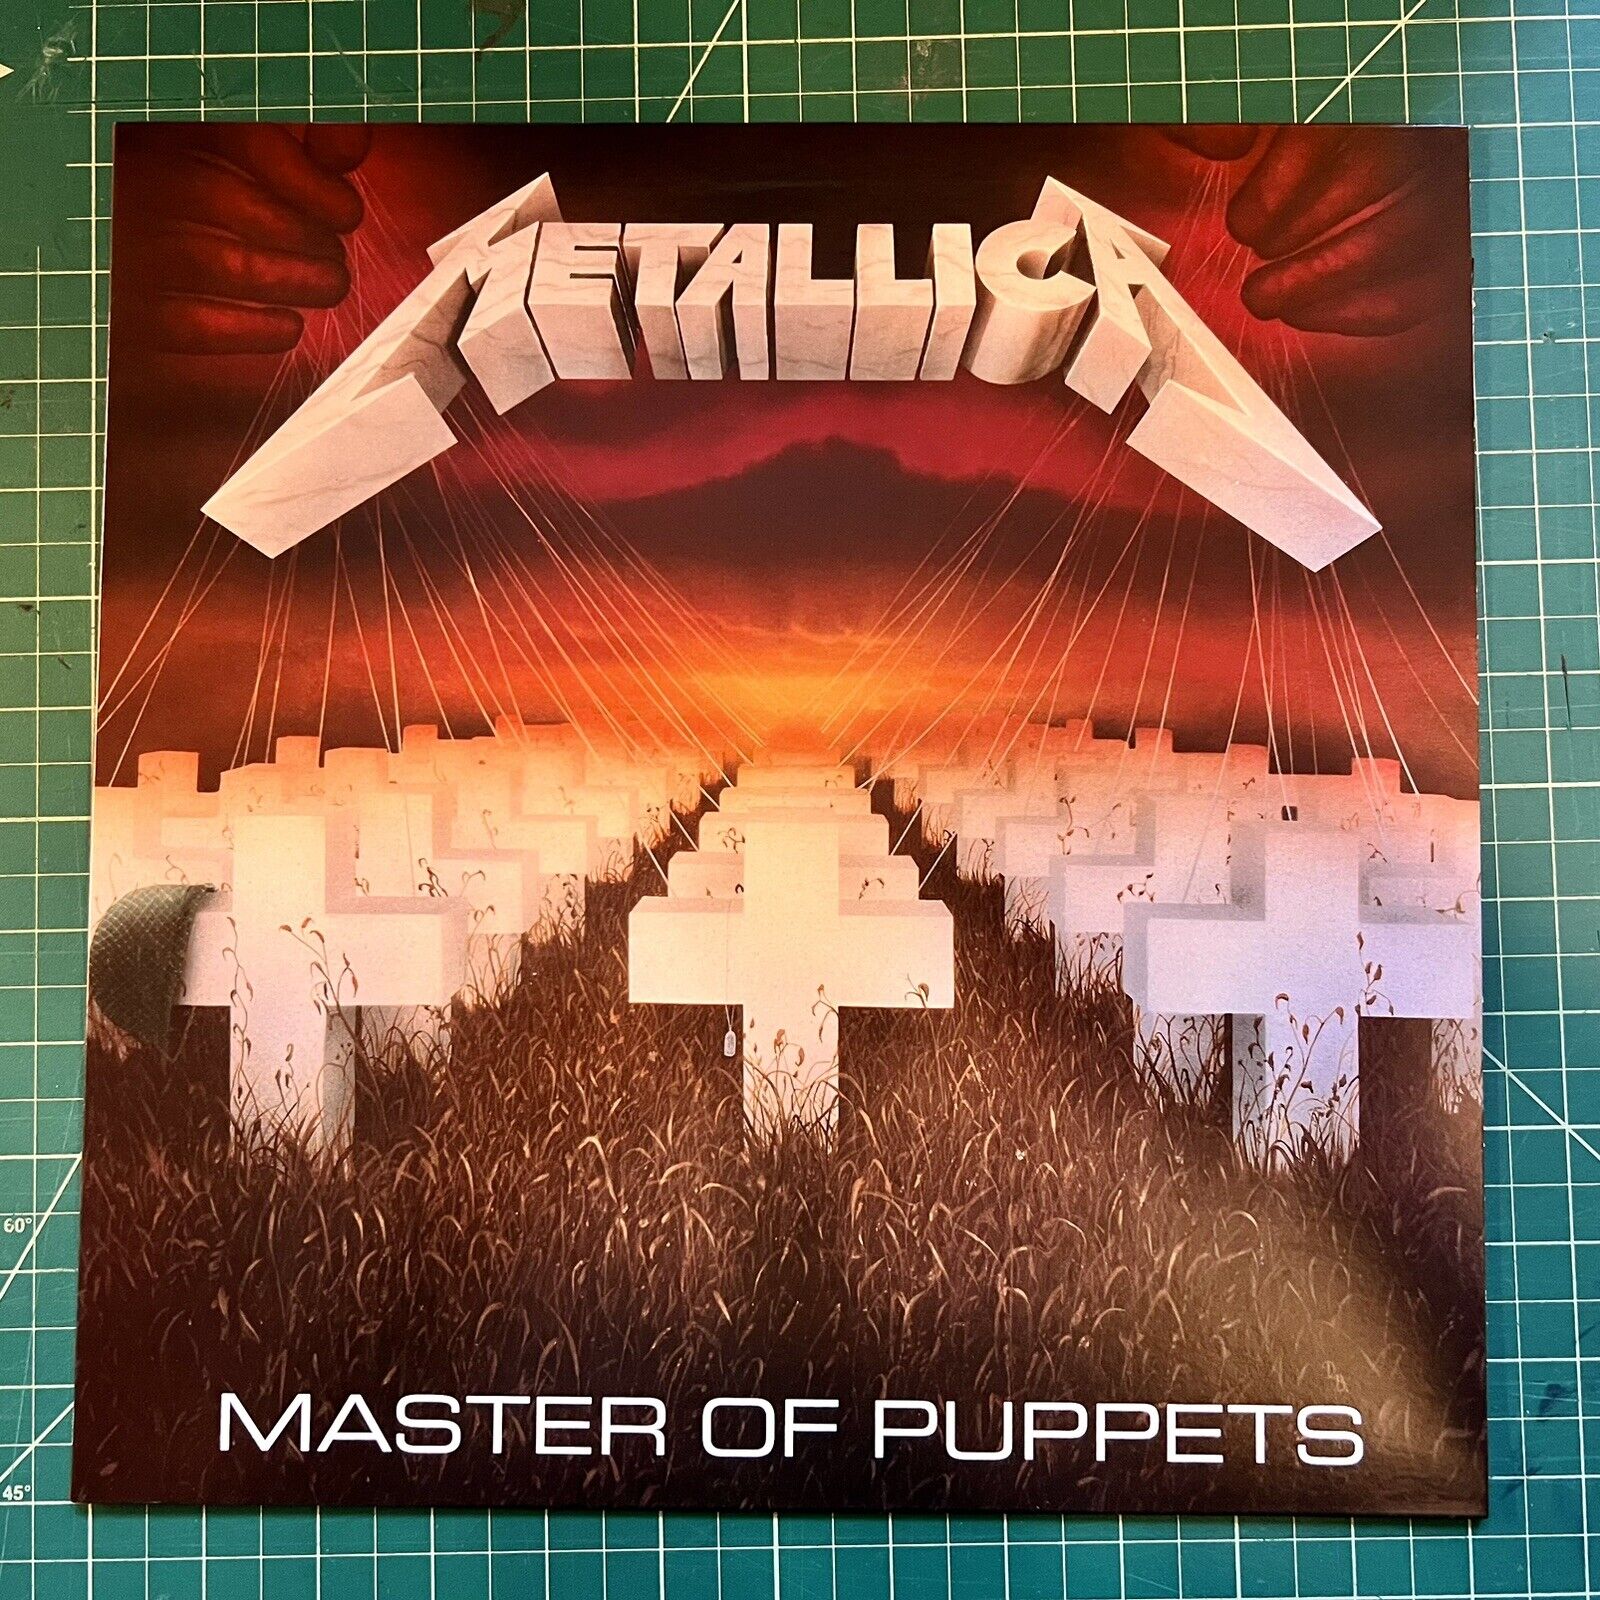 🤘Metallica - Master Of Puppets LP Red Vinyl Repress 2021 Walmart Exclusive 🤘